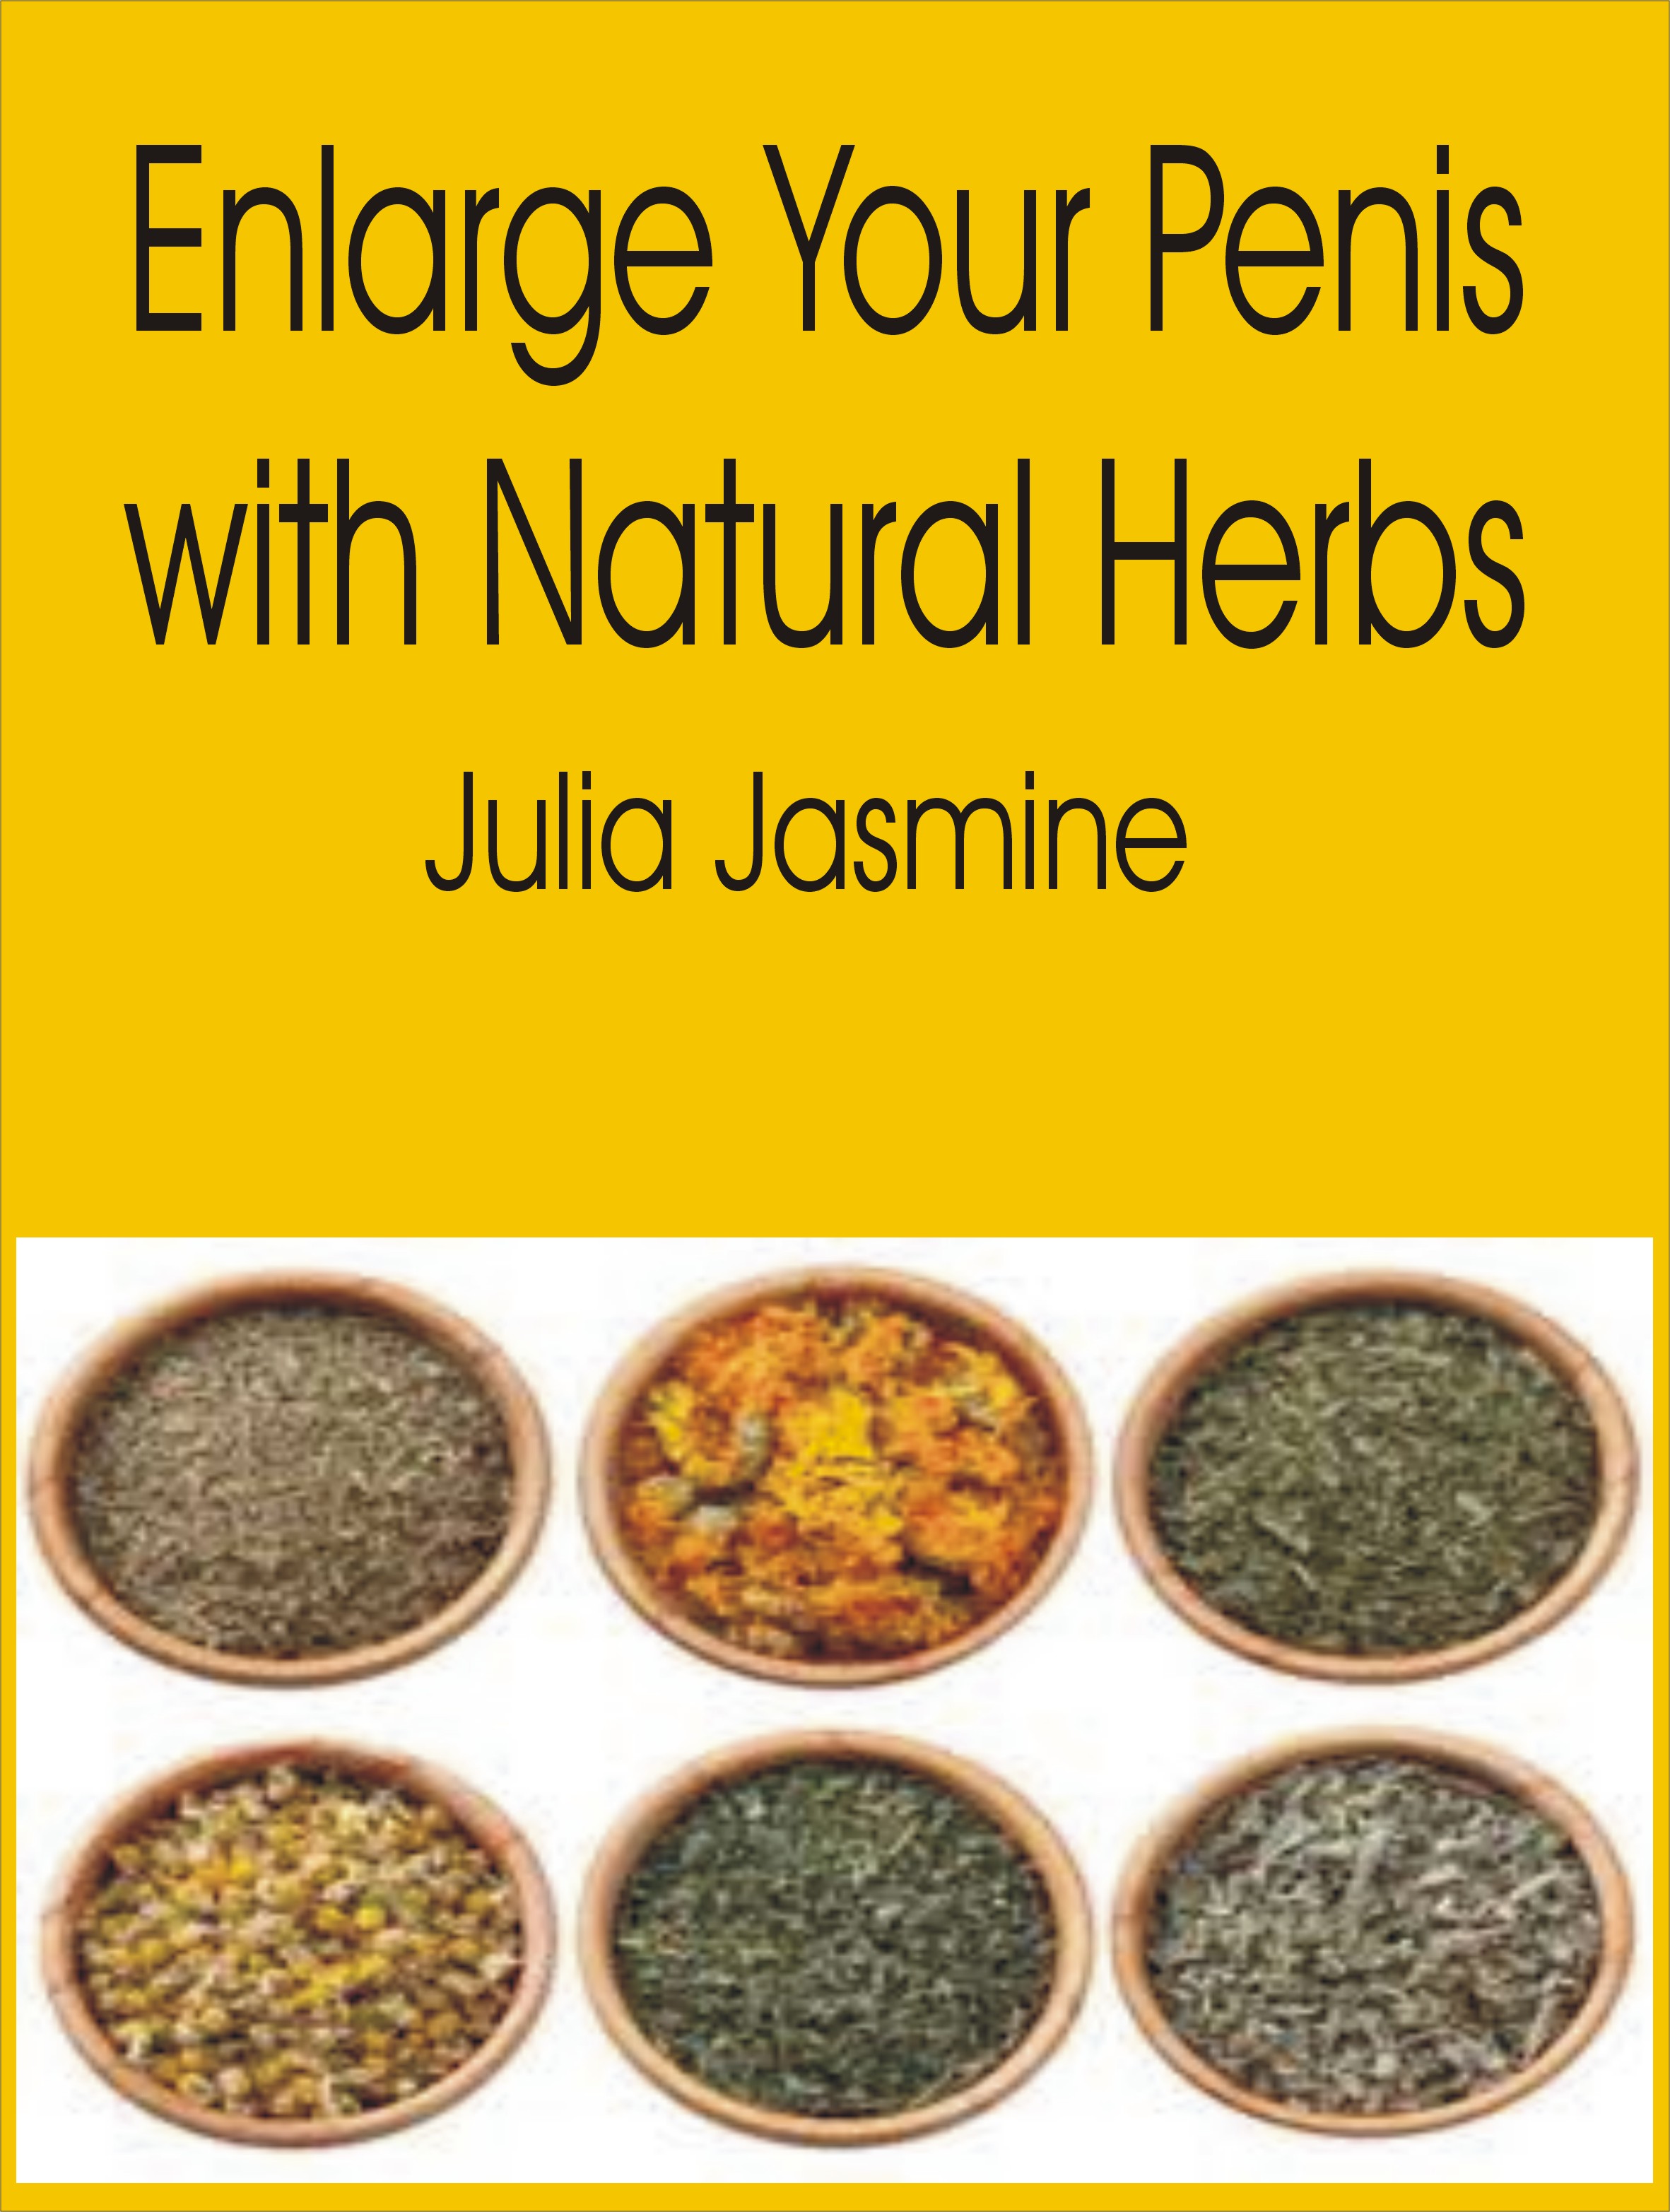 Enlargement for penis natural remedies Herbal Home